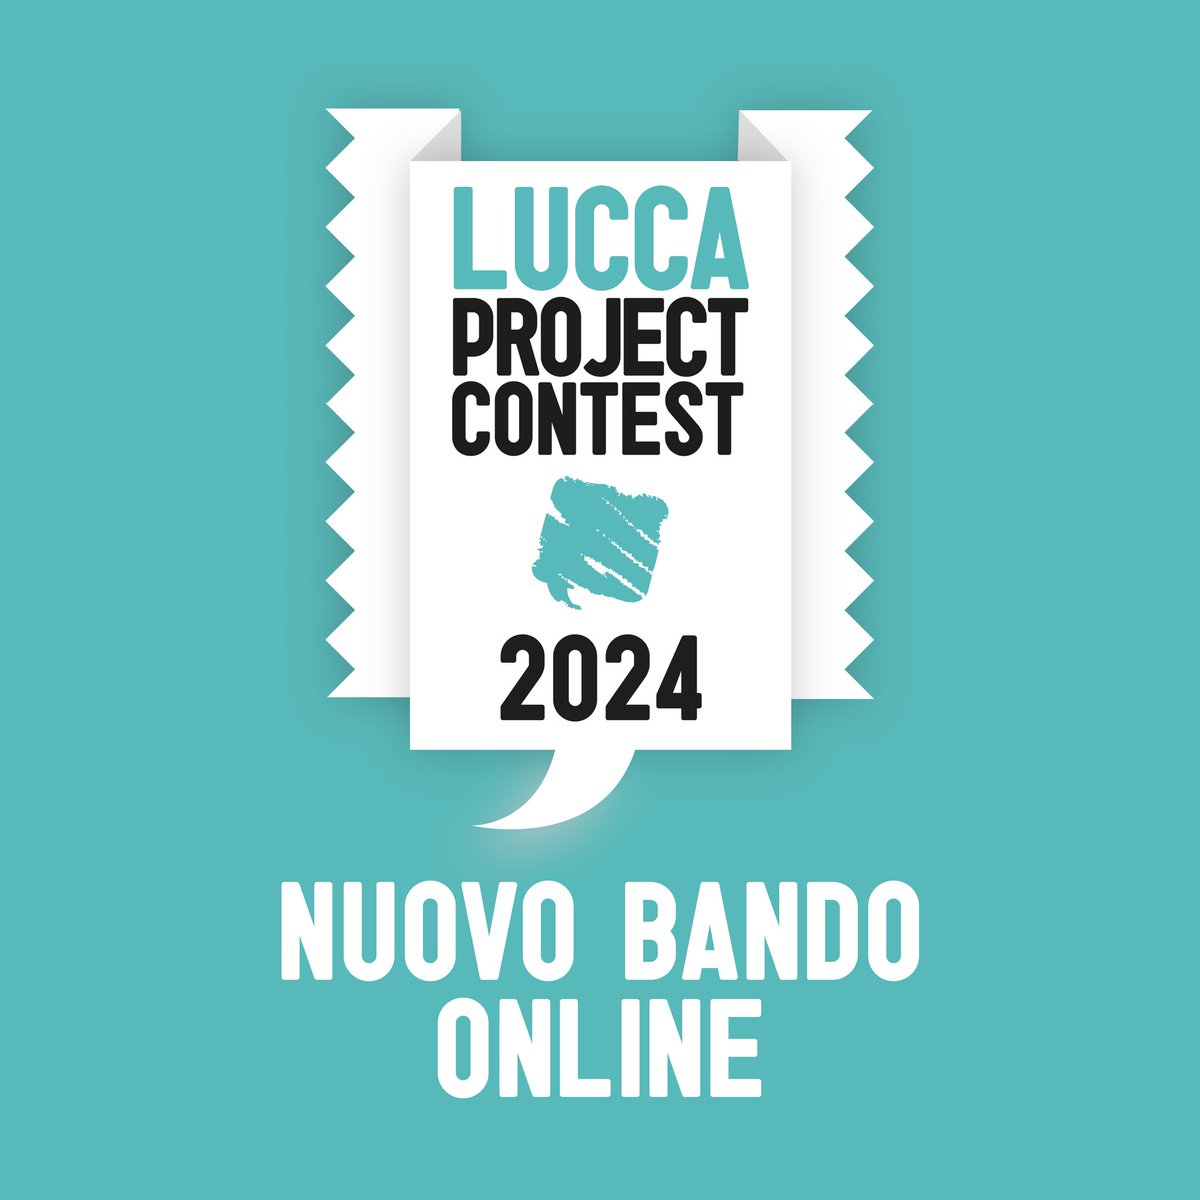 È finalmente online il bando del Lucca Project Contest in collaborazione con @EdizioniBD: tinyurl.com/f6mbk2rr #Luccacg24